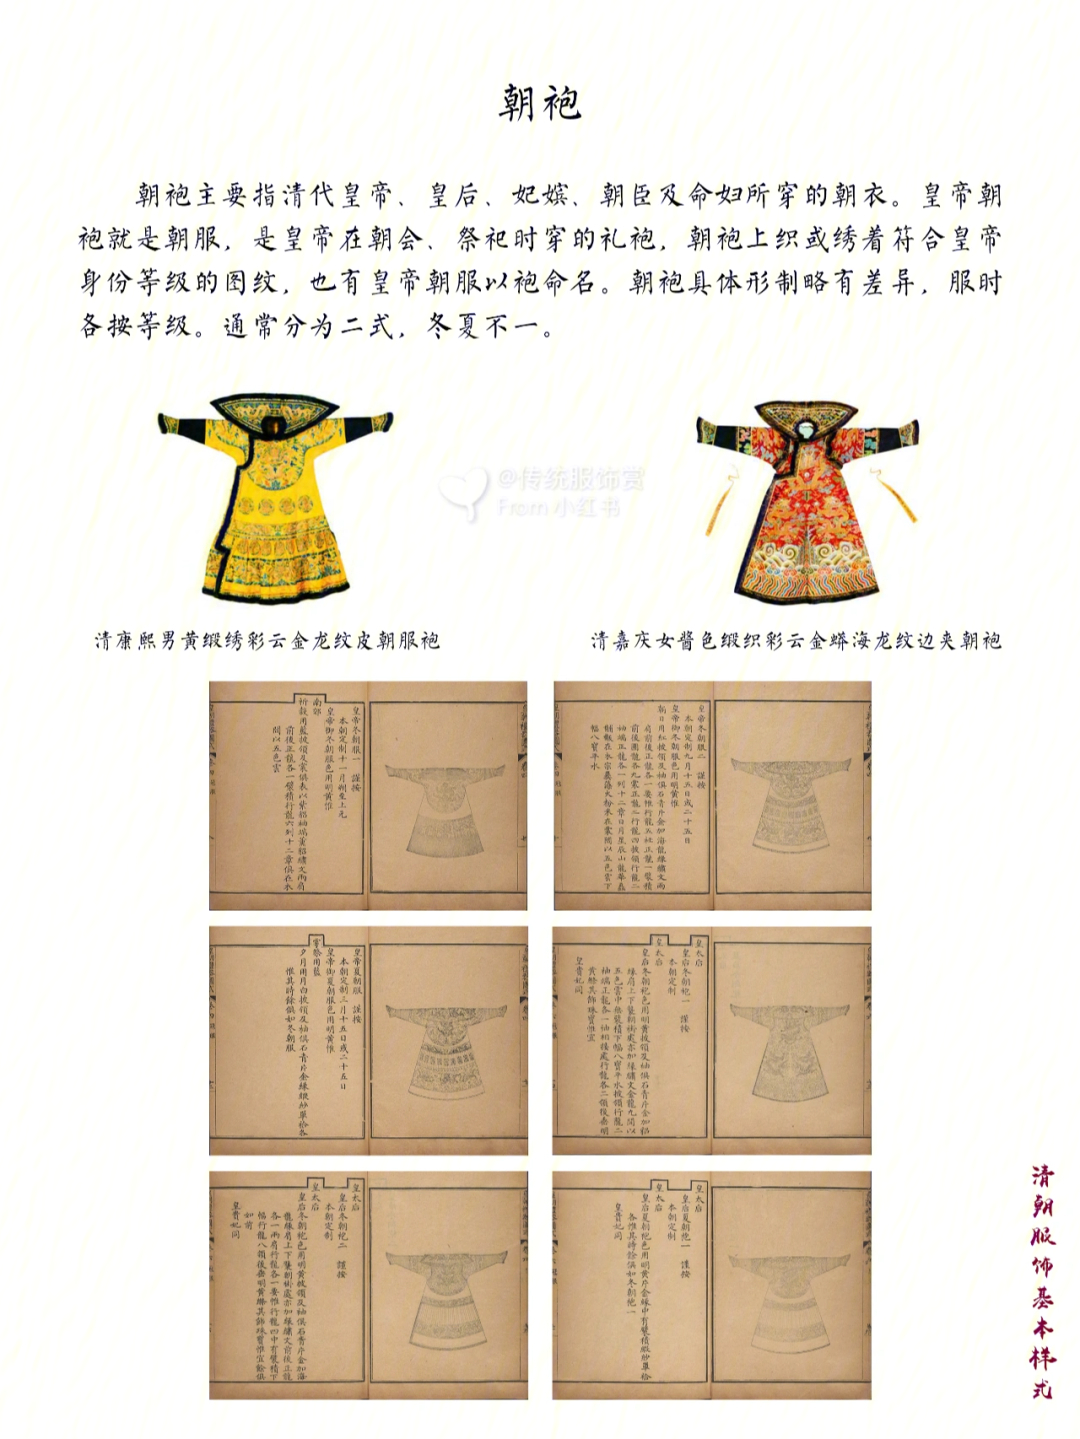 清代文献《穿戴档》是清宫中专门记录皇帝一年四季穿着服饰的档案资料